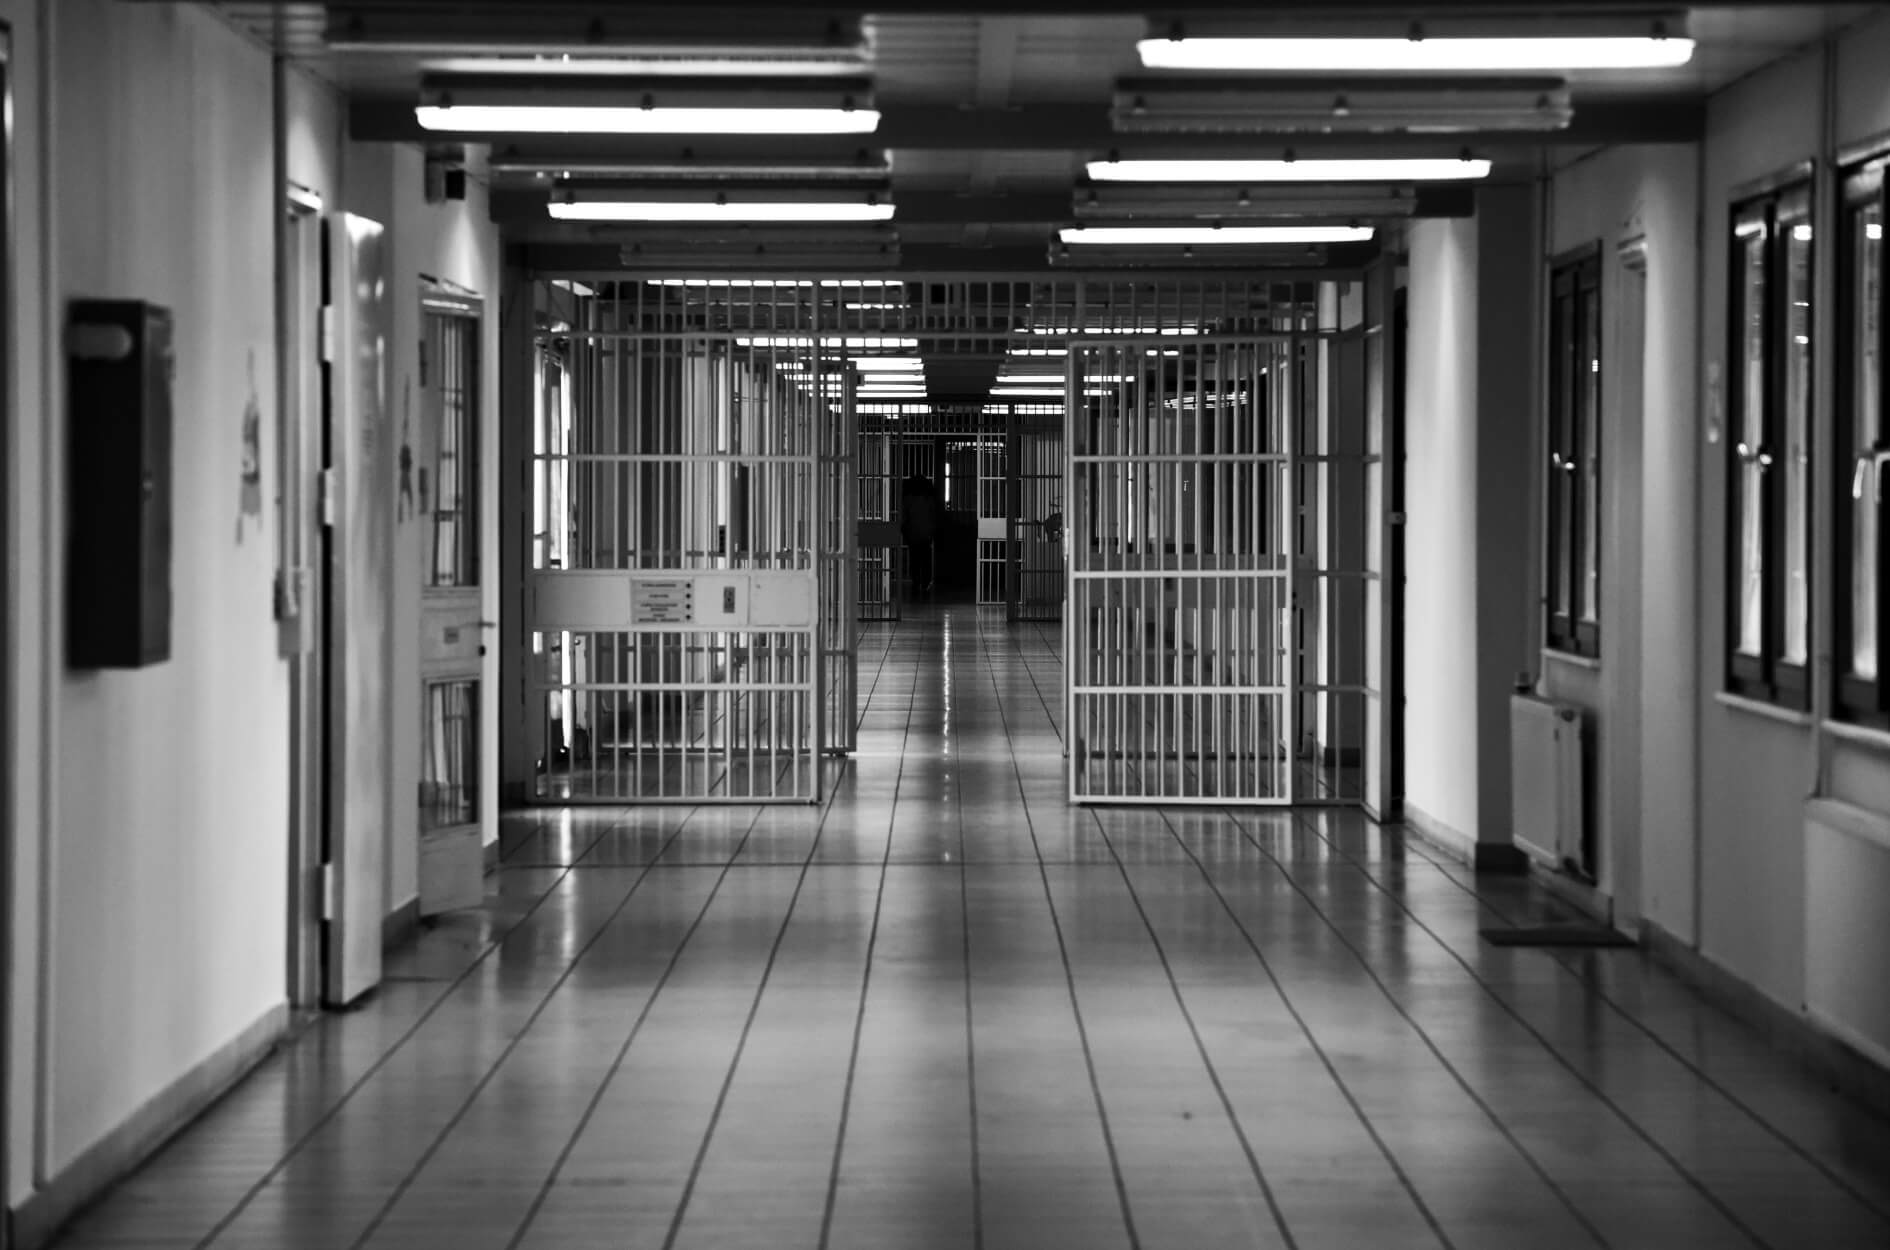 Κύκλωμα παράνομων αποφυλακίσεων: Ισοβίτης αρνείται να δώσει εξηγήσεις επικαλούμενος παράνομες υποκλοπές